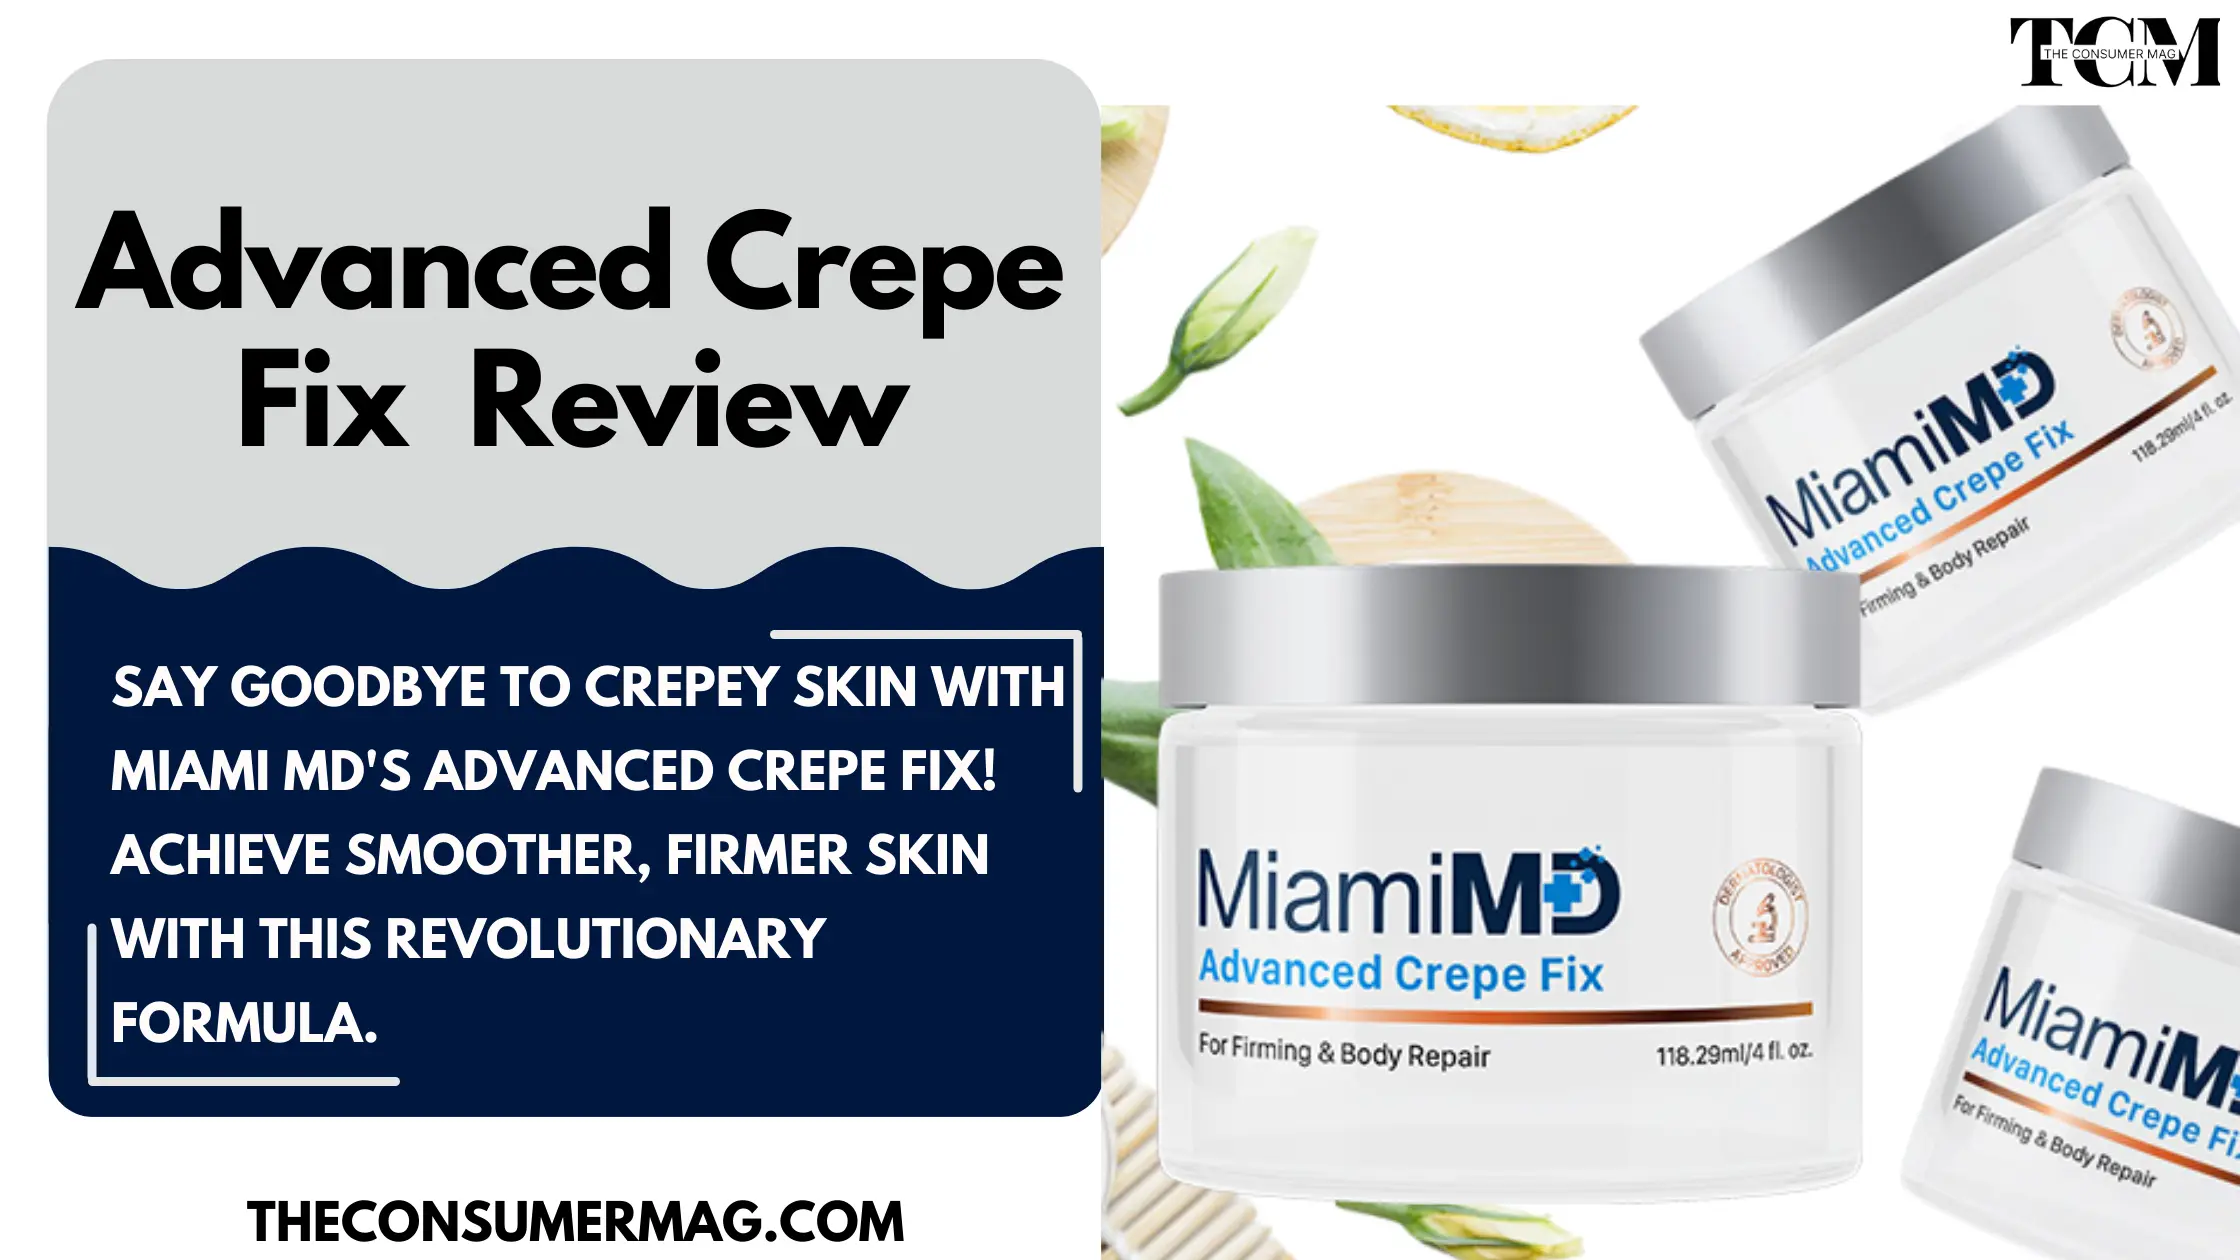 Miami MD Advanced Crepe Fix featured image